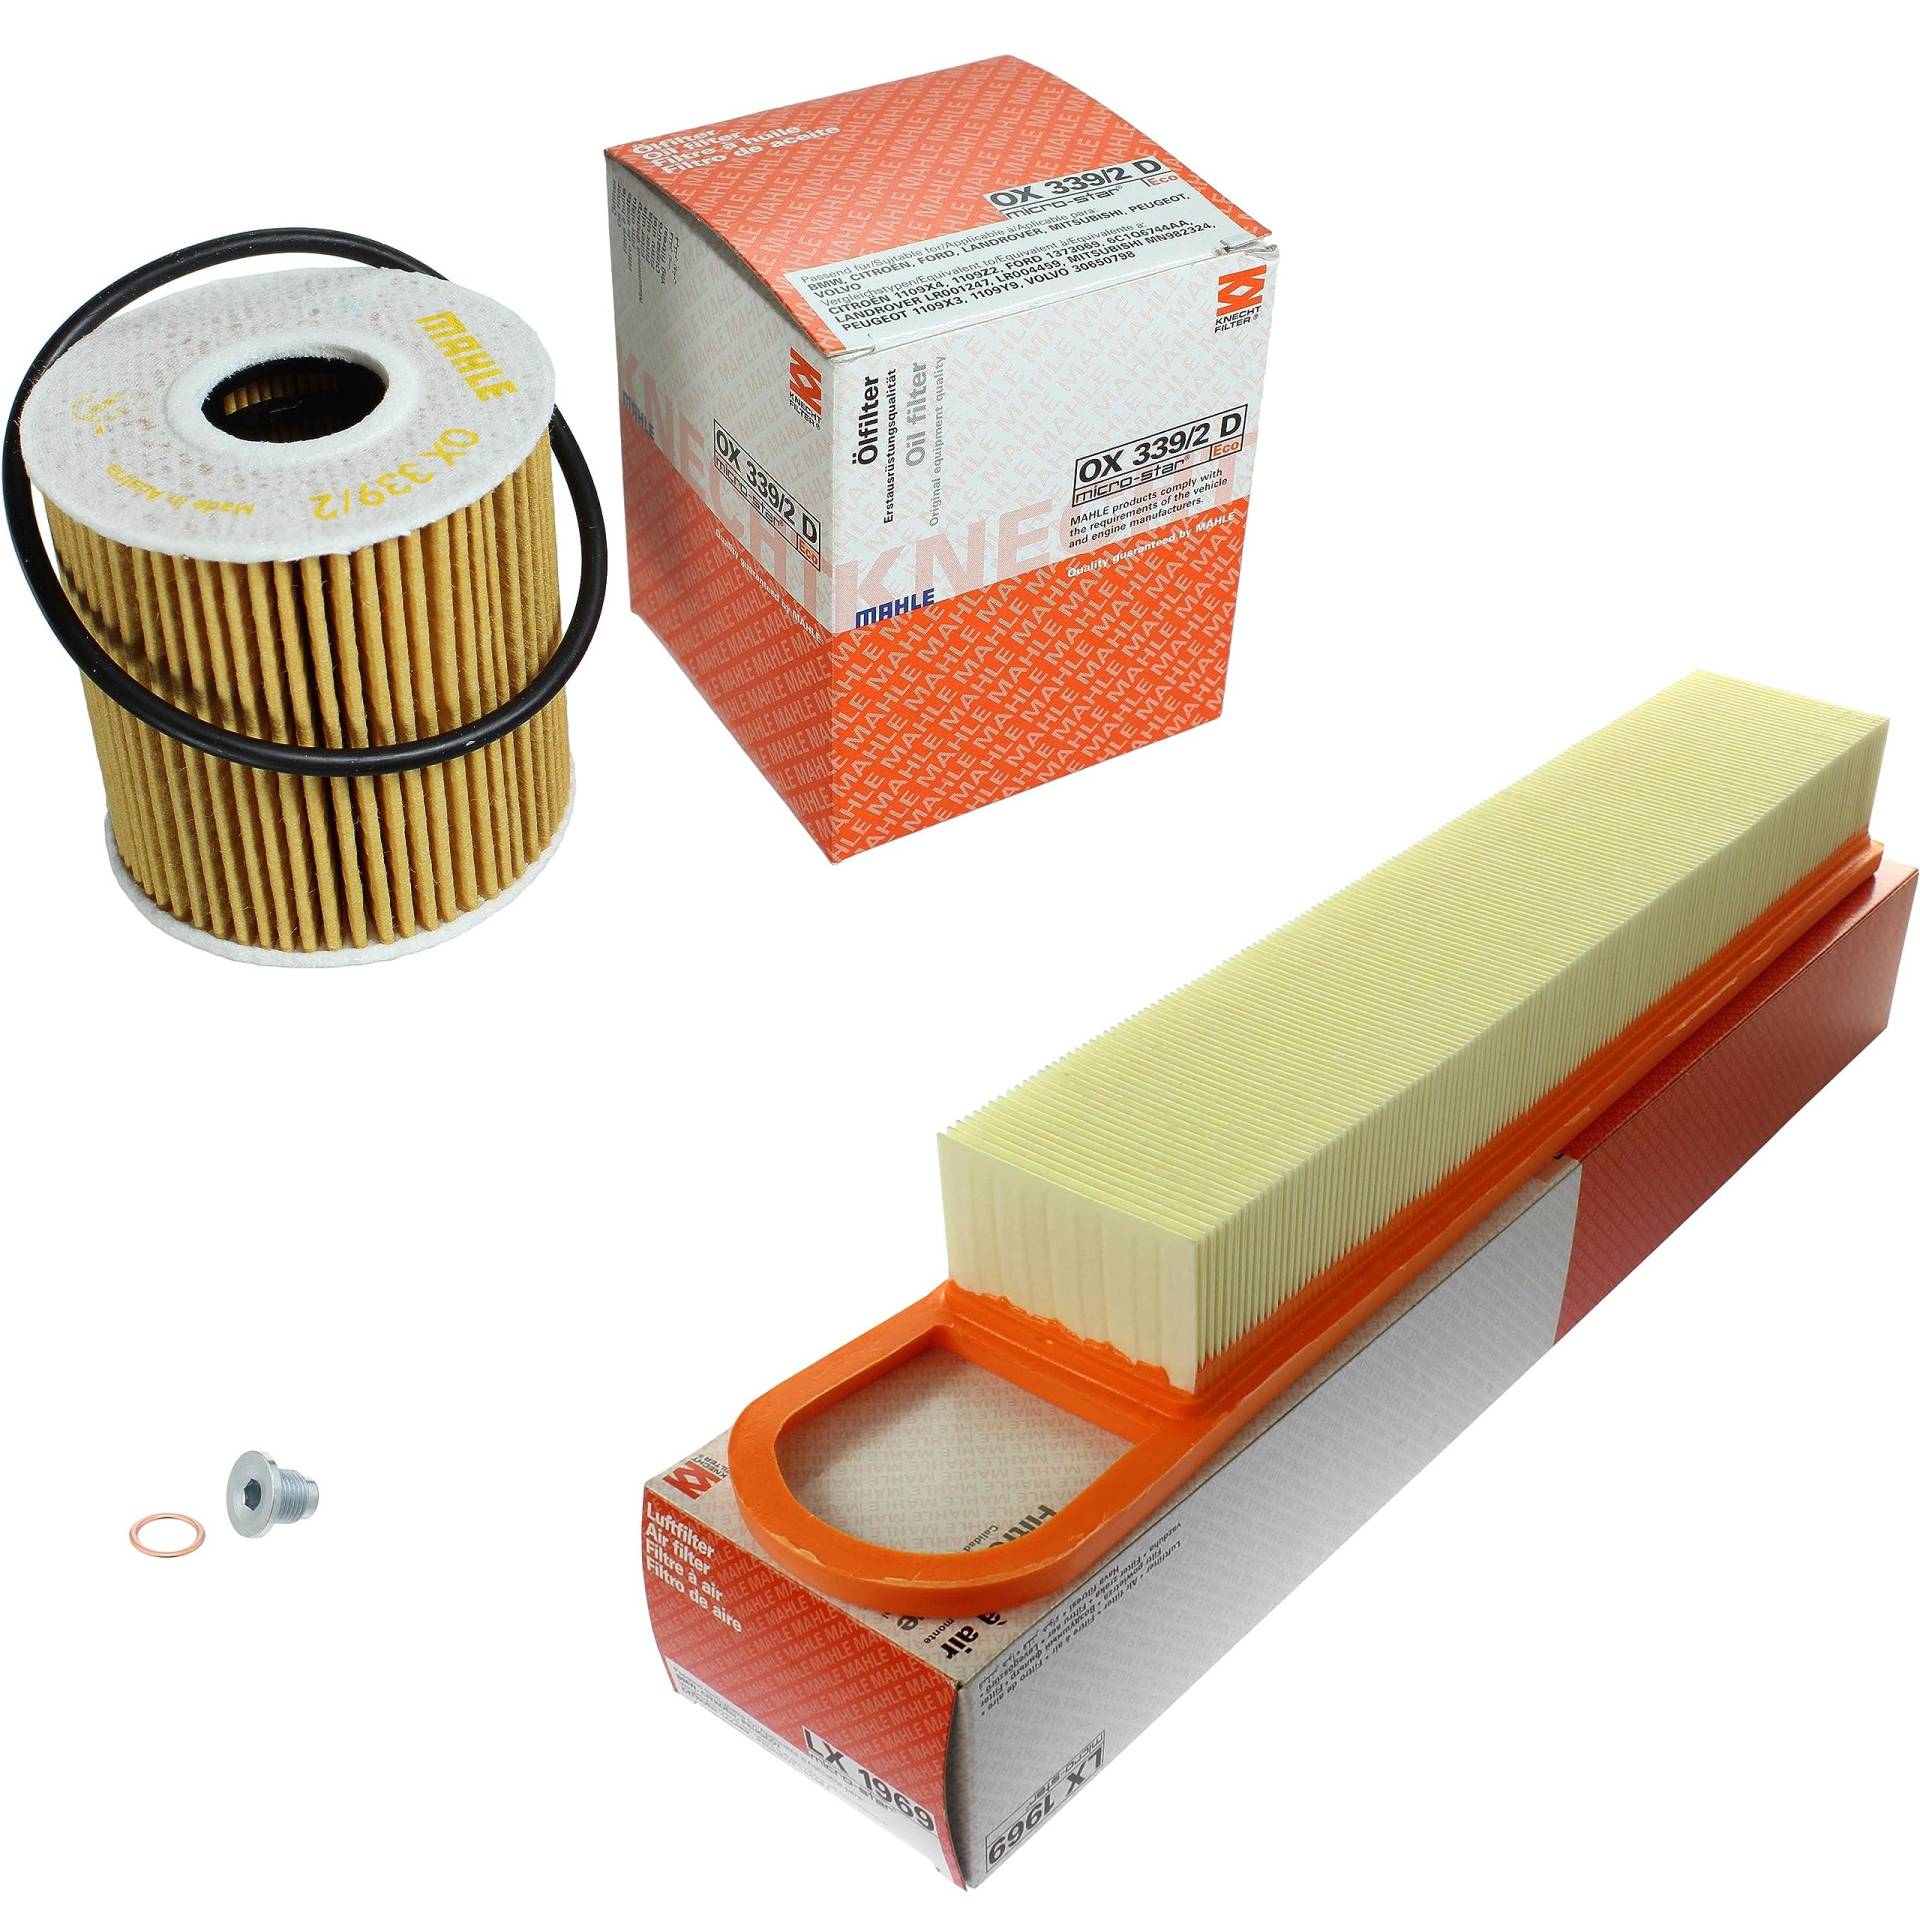 Inspektionspaket Wartungspaket Filterset mit Ölfilter OX 339/2D, Luftfilter LX 1969, Verschlussschraube von EISENFELS